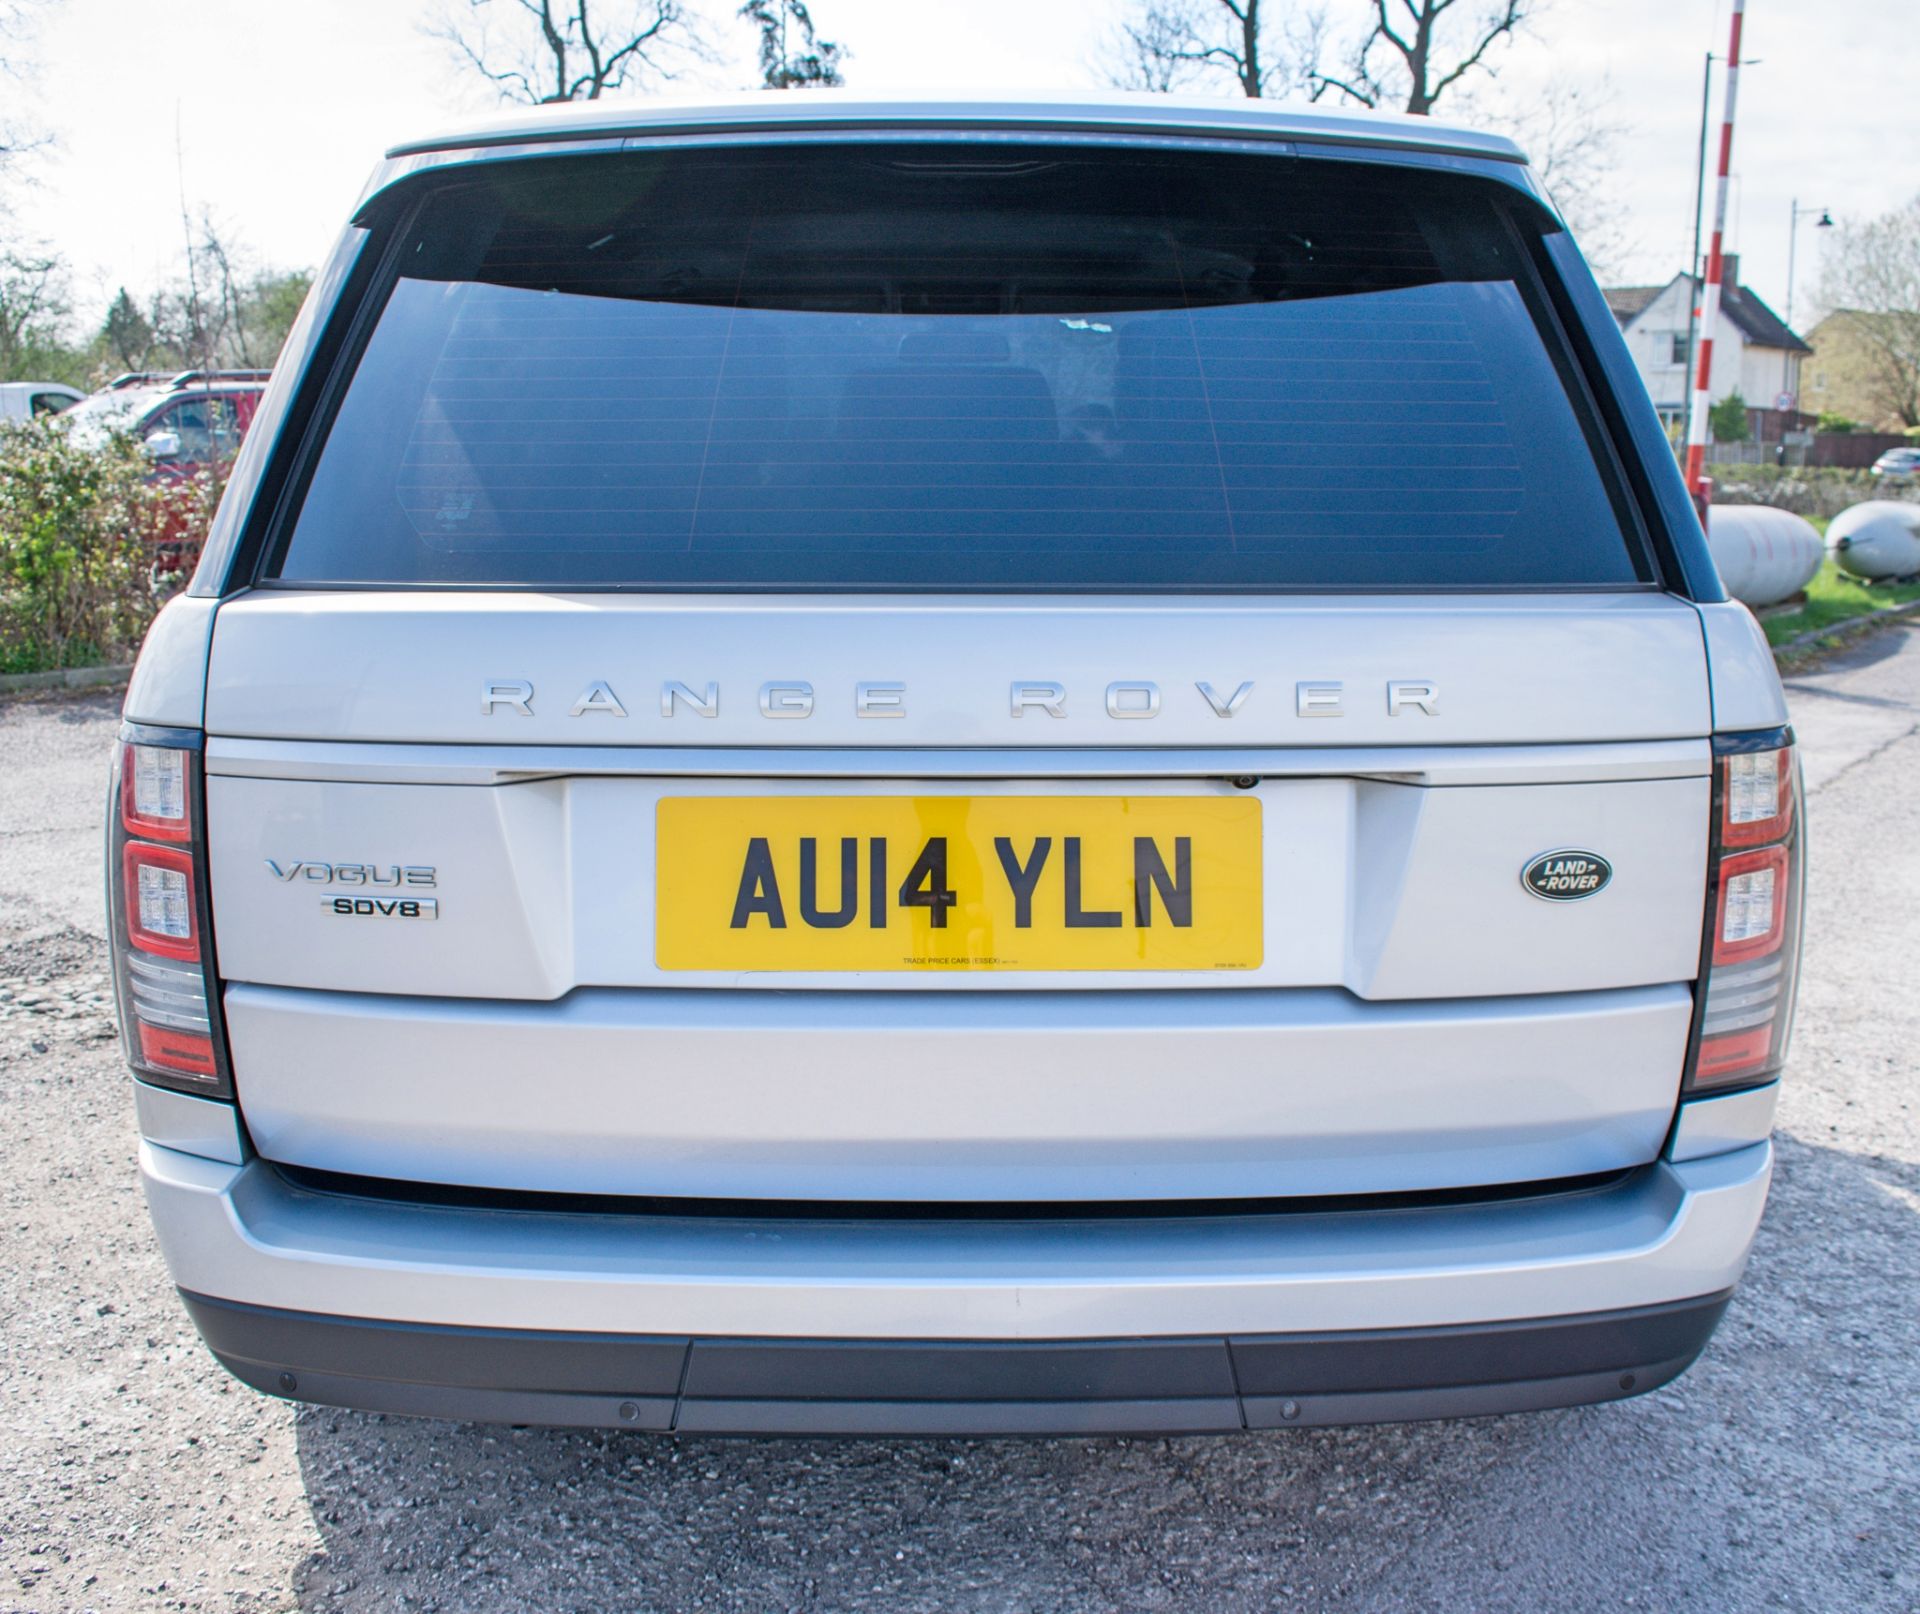 Range Rover Vogue SDV8 Auto 5 door estate SUV Registration Number: AU14 YLN Date of Registration: - Image 6 of 12